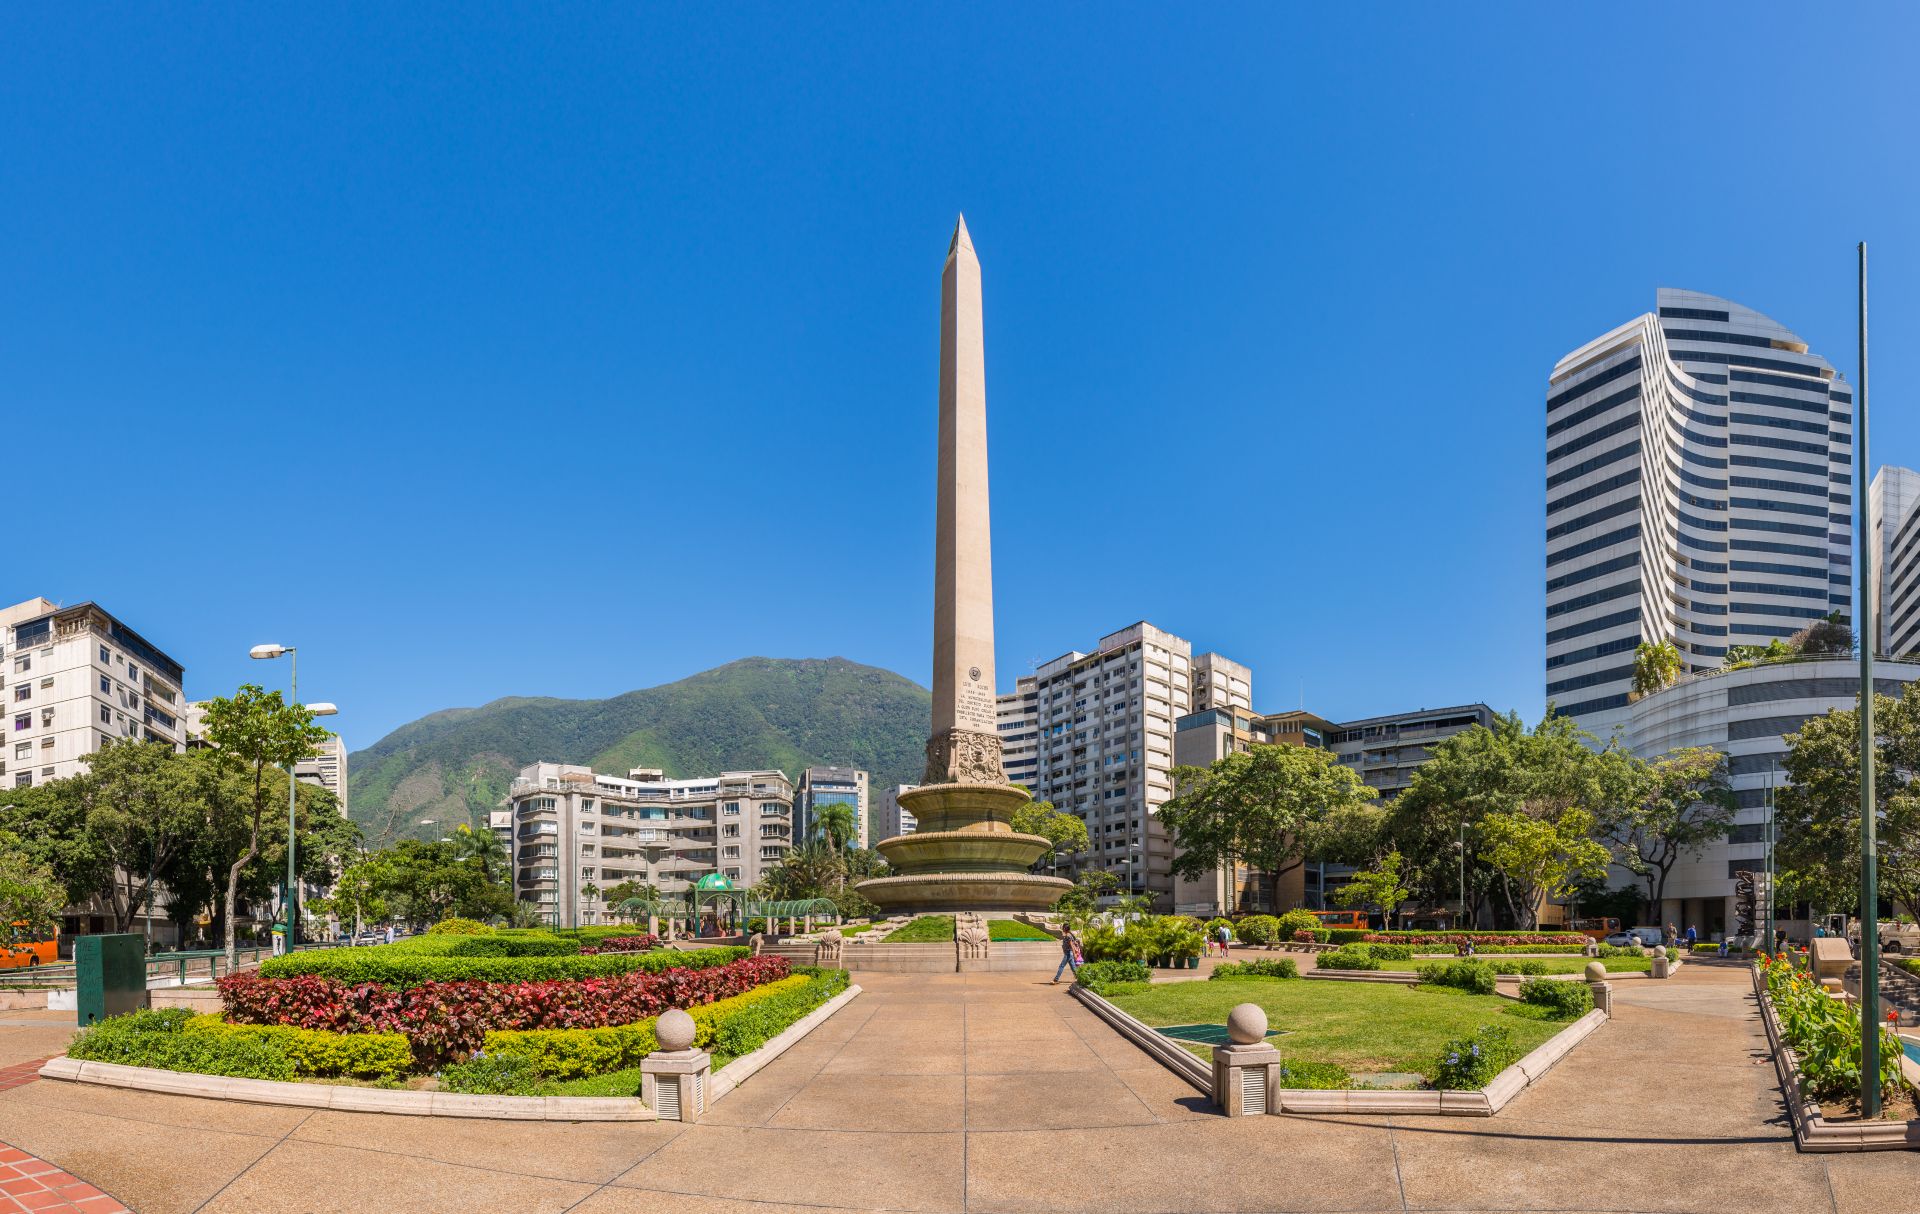 Площадь Франсии (также известная как площадь Альтамира), в Каракасе, столице Венесуэлы